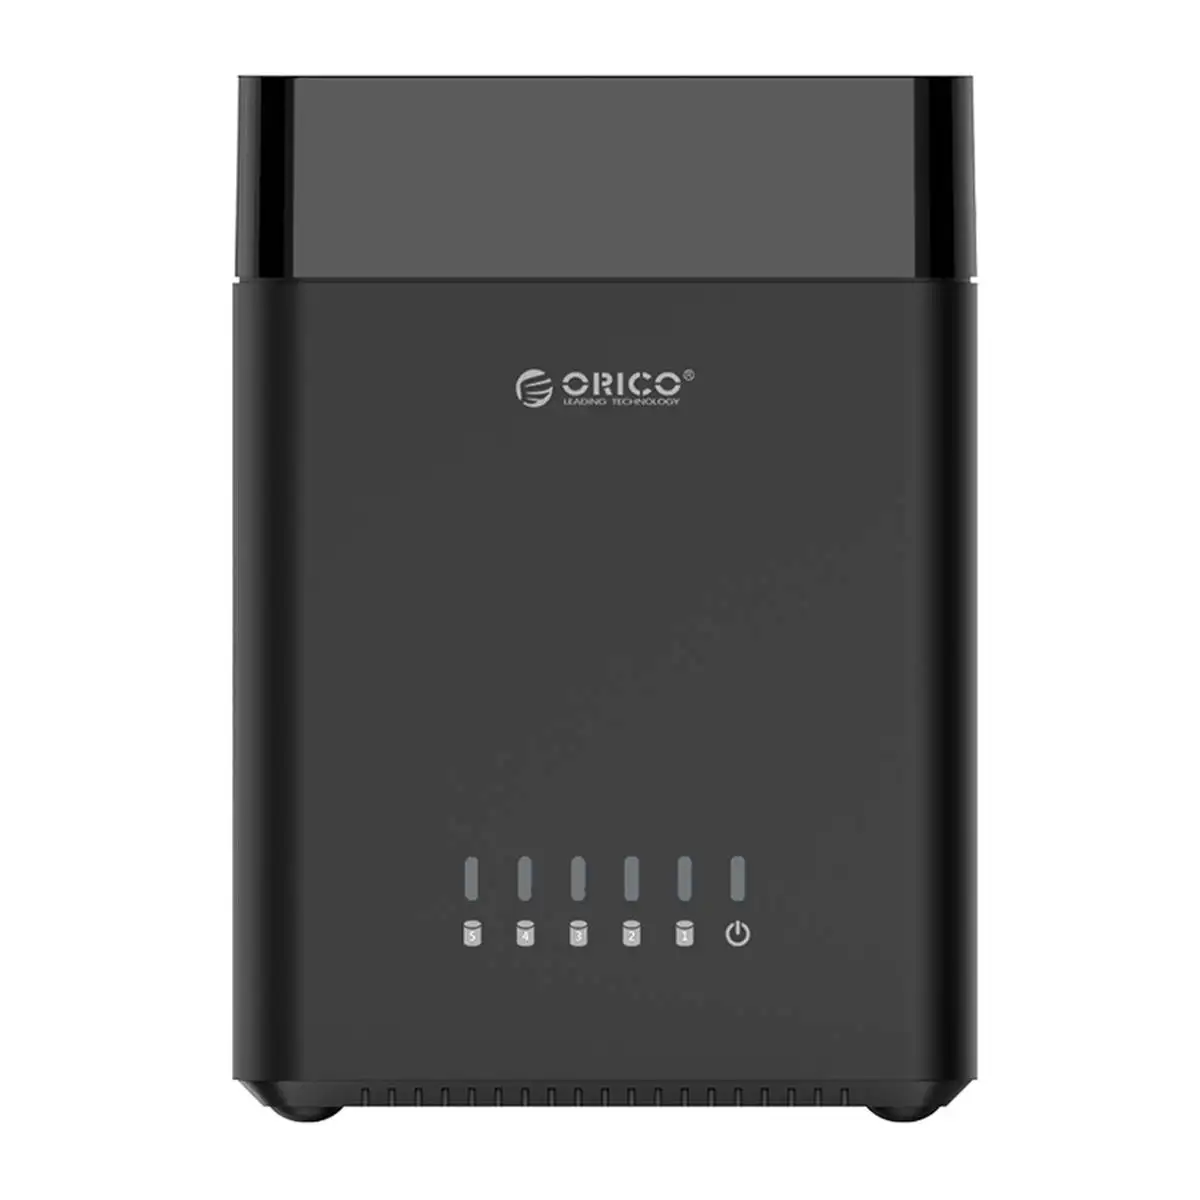 ORICO 5 отсек магнитного типа 3,5 дюймов жесткий диск корпус USB3.0 для SATA3.0 3,5 в HDD Чехол Поддержка UASP 12V6. 5A мощность макс 50 ТБ